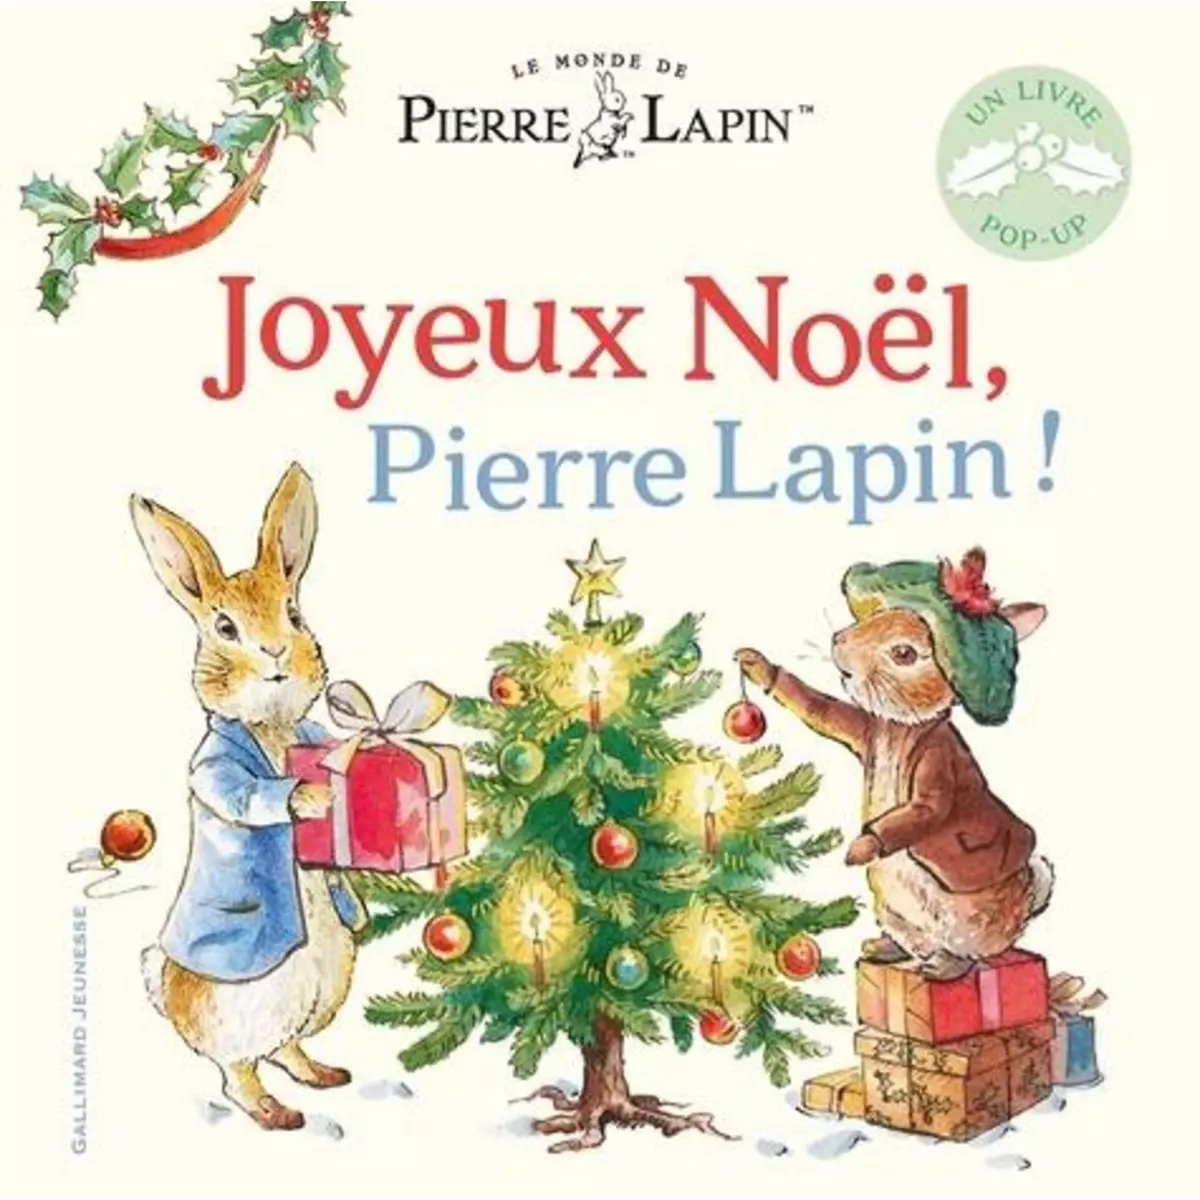  LE MONDE DE PIERRE LAPIN : JOYEUX NOEL, PIERRE LAPIN ! UN LIVRE POP-UP, Potter Beatrix